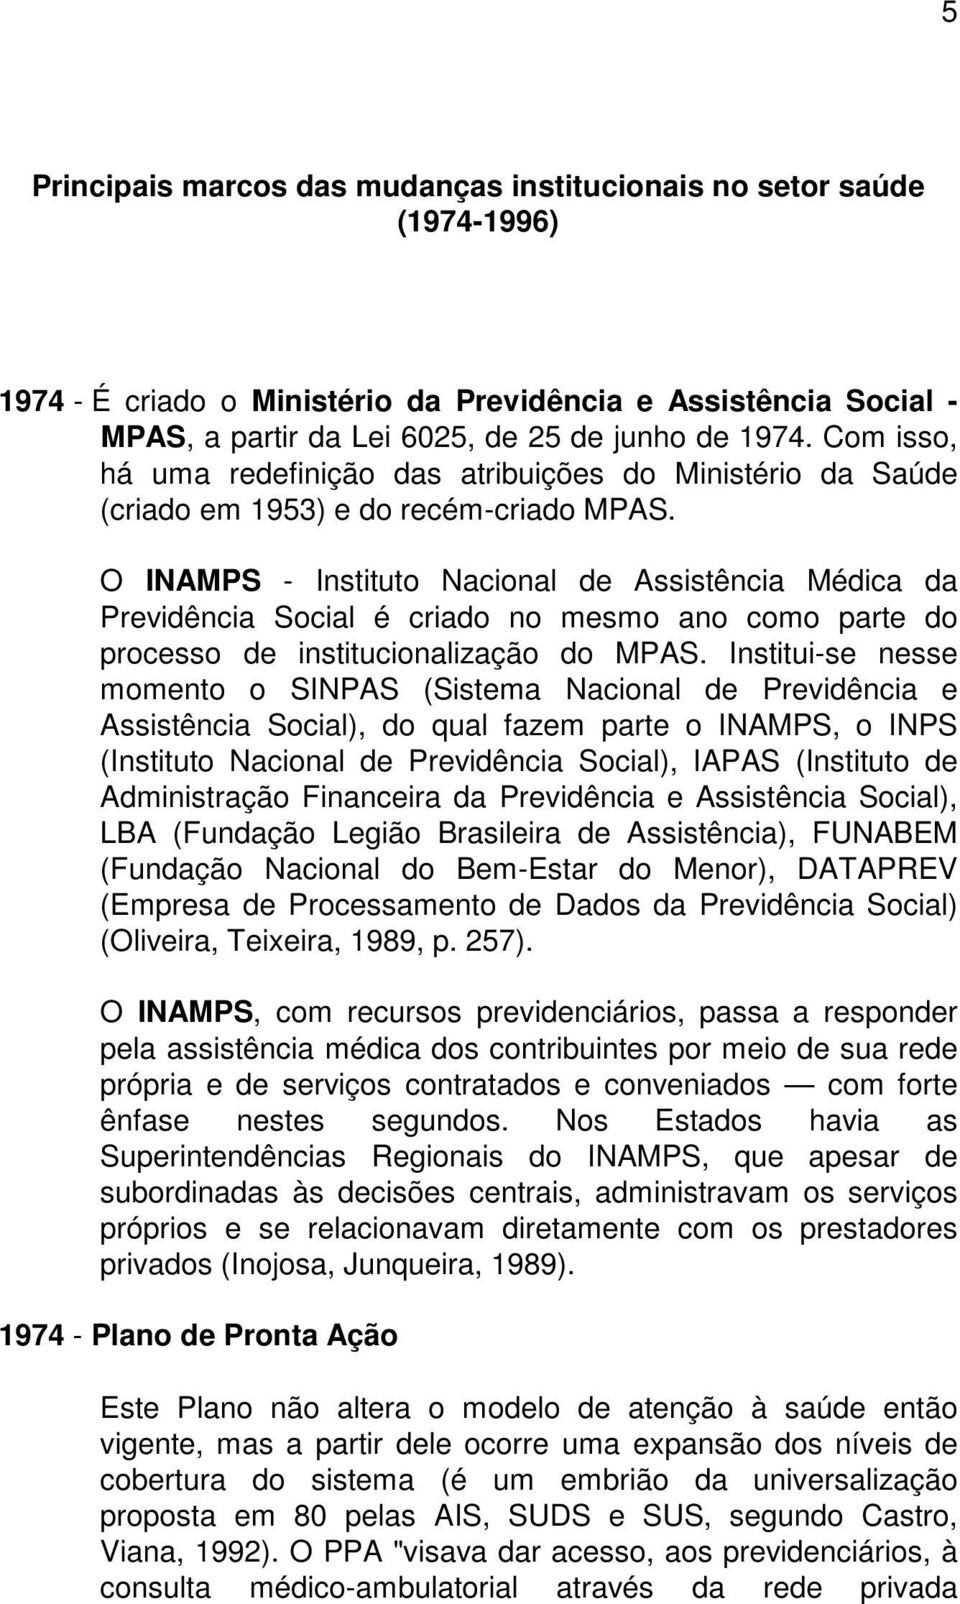 O INAMPS - Instituto Nacional de Assistência Médica da Previdência Social é criado no mesmo ano como parte do processo de institucionalização do MPAS.